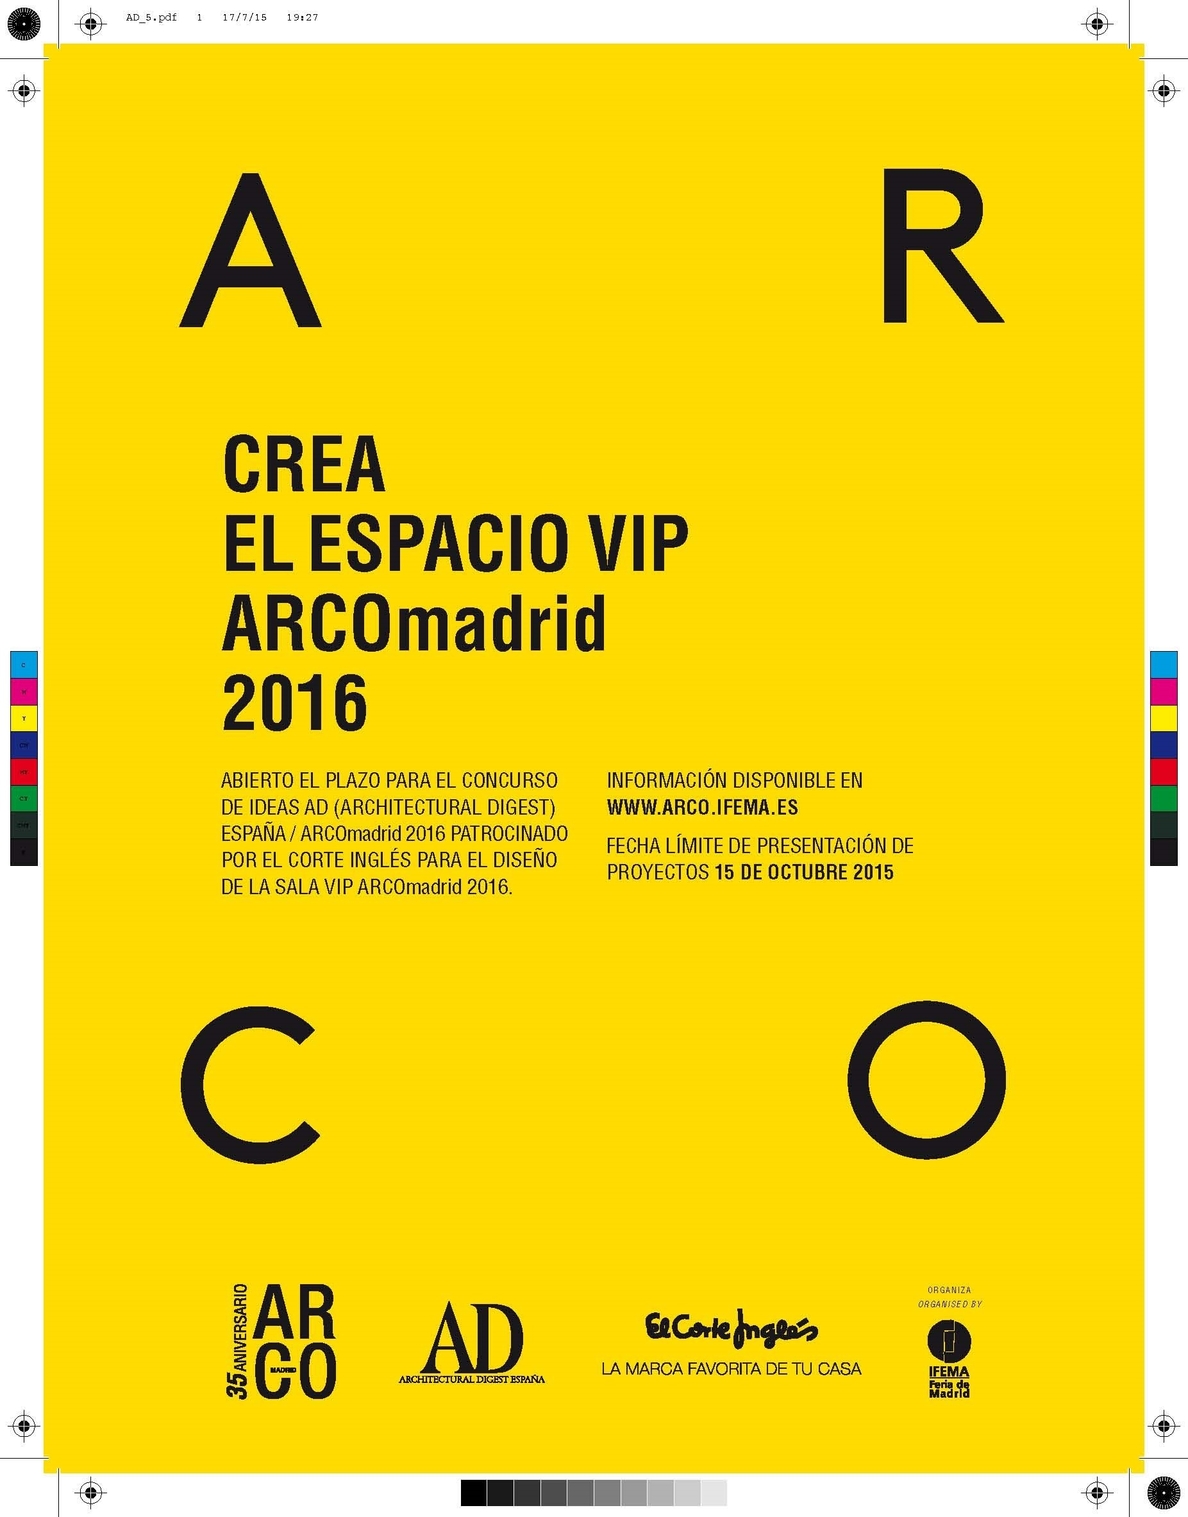 La revista AD y ARCOmadrid convocan el IV Concurso de Ideas para el Diseño de Sala Vip de la próxima edición de la Feria